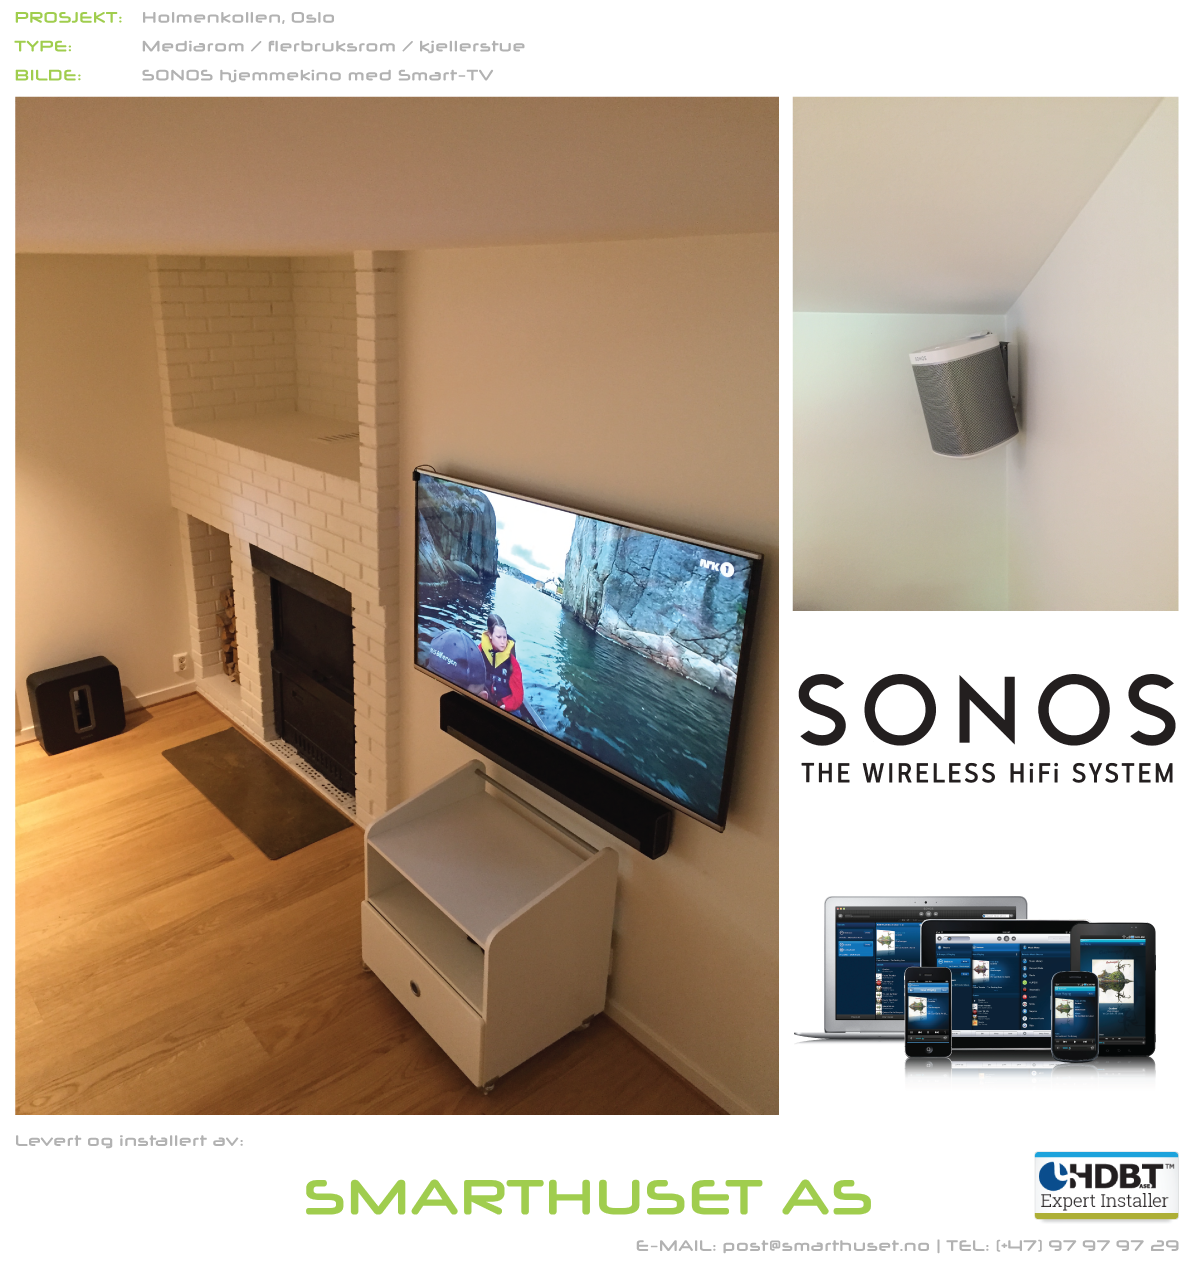 Firmapresentasjon av Smarthuset AS - Sonos_Kjellerstue.png - Smarthuset AS